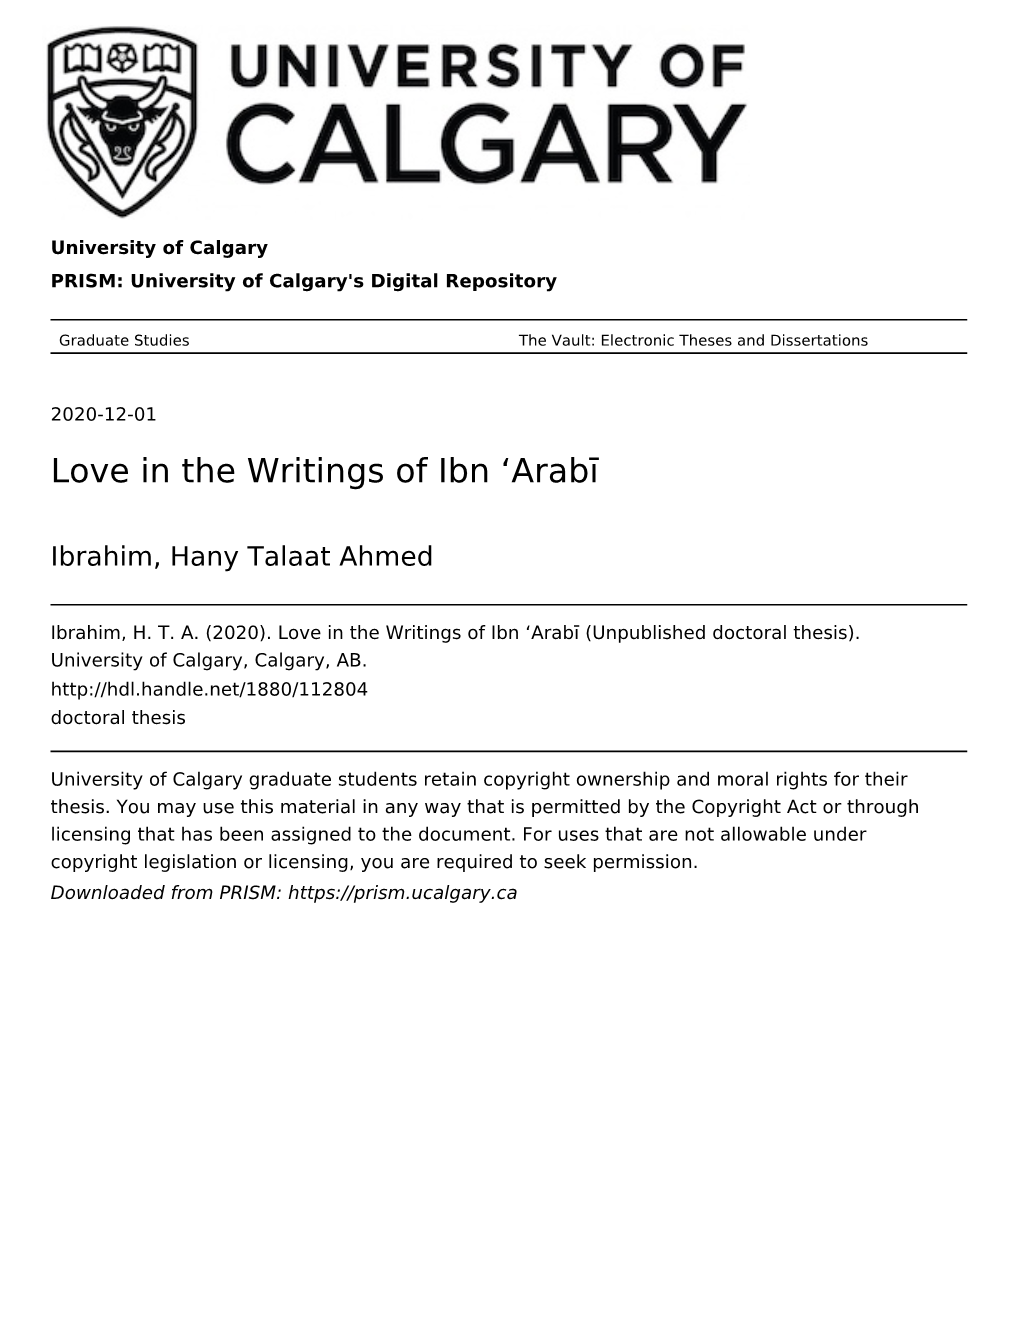 Love in the Writings of Ibn 'Arabī